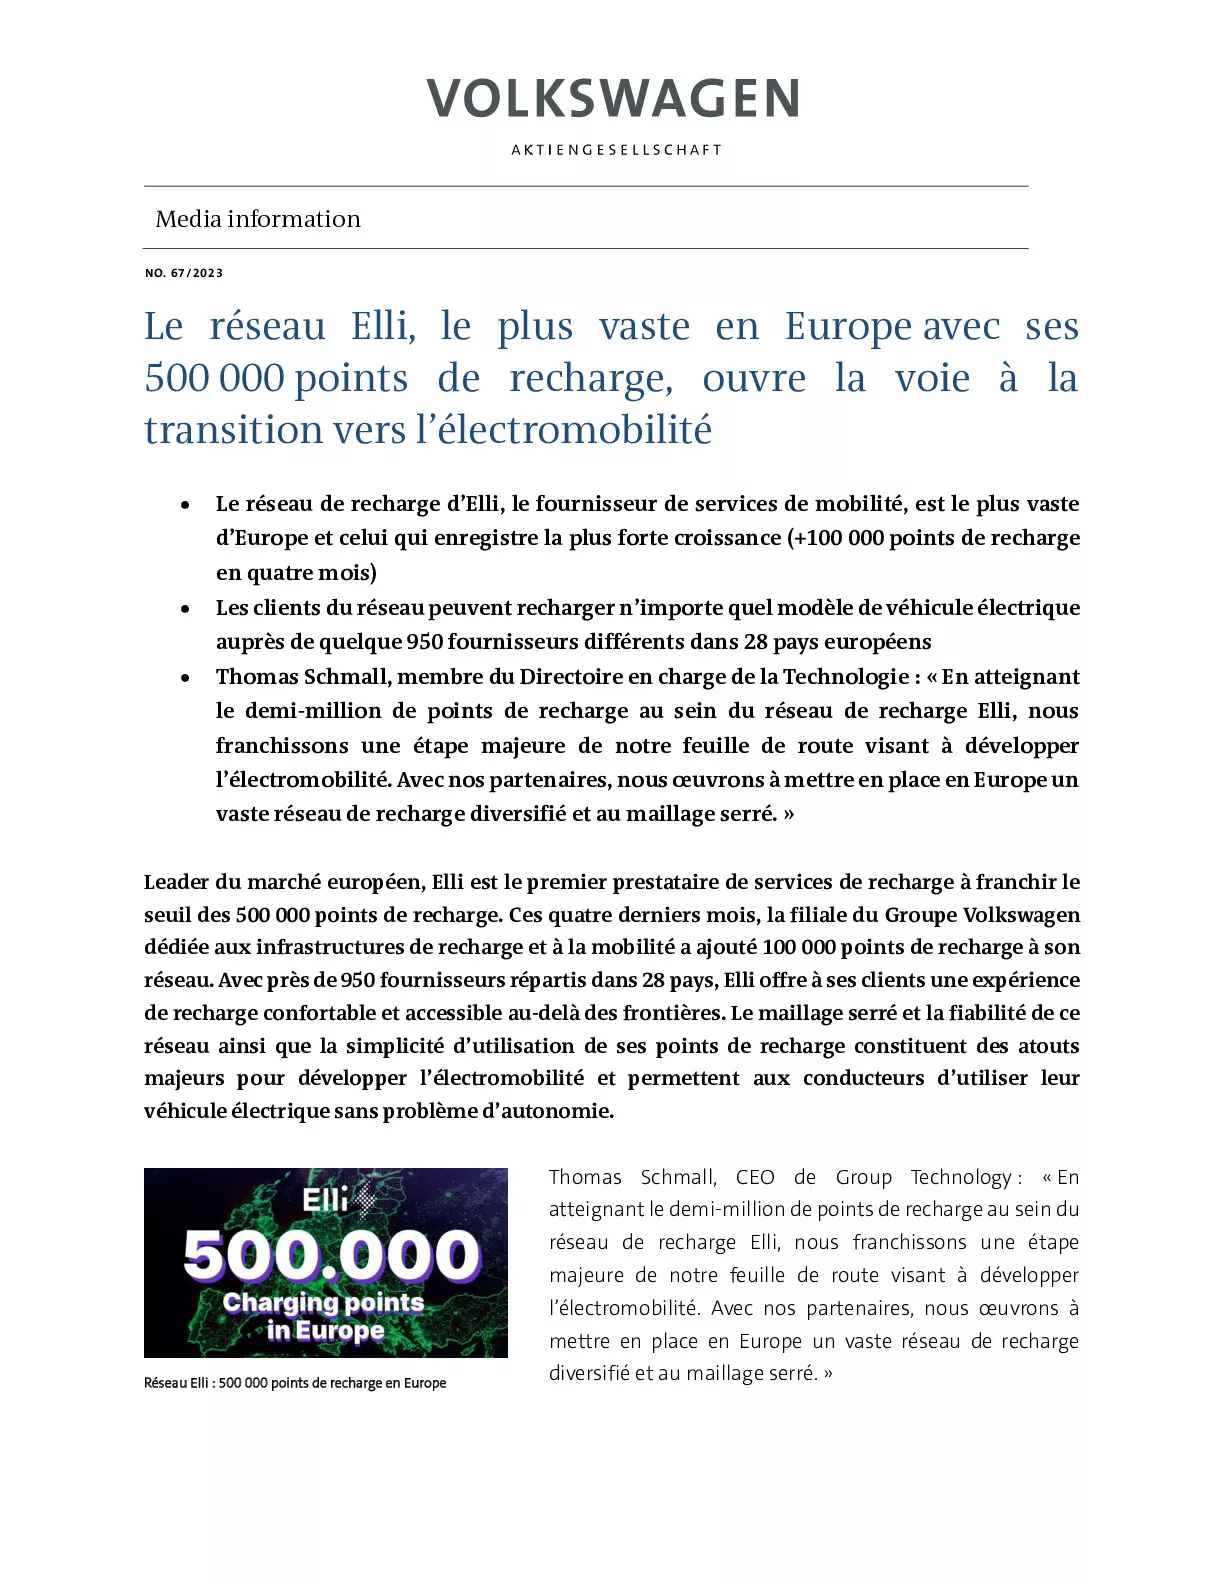 23_04_18_Le réseau Elli, le plus vaste en Europe avec ses 500 000 points de recharge, ouvre la voie à la transition vers l’électromobilité-pdf